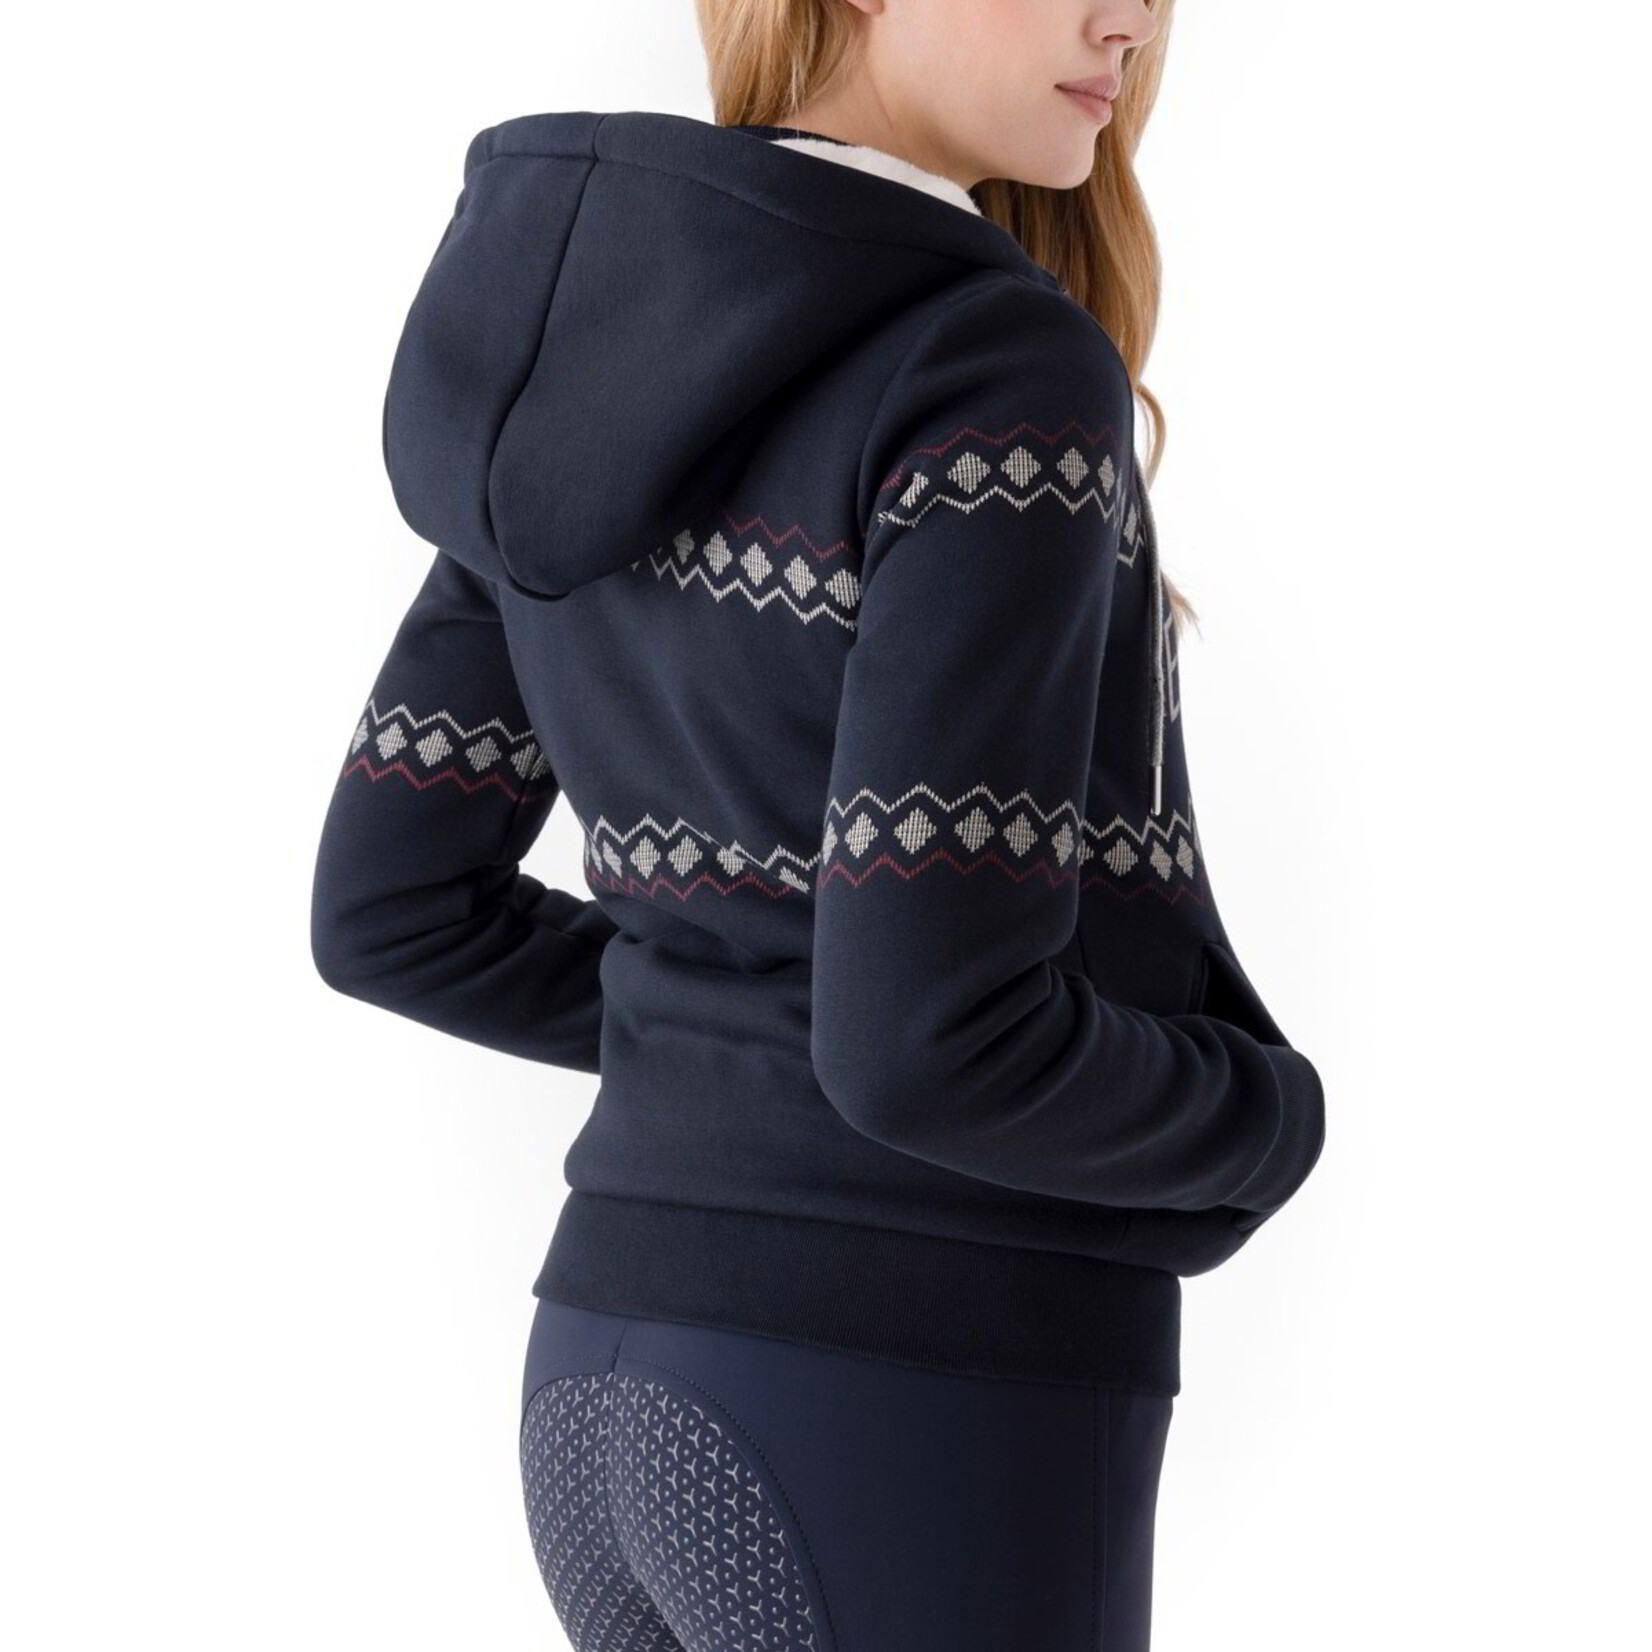 Equiline Equiline Vixy Women's Full Zip Hooded Sweatshirt